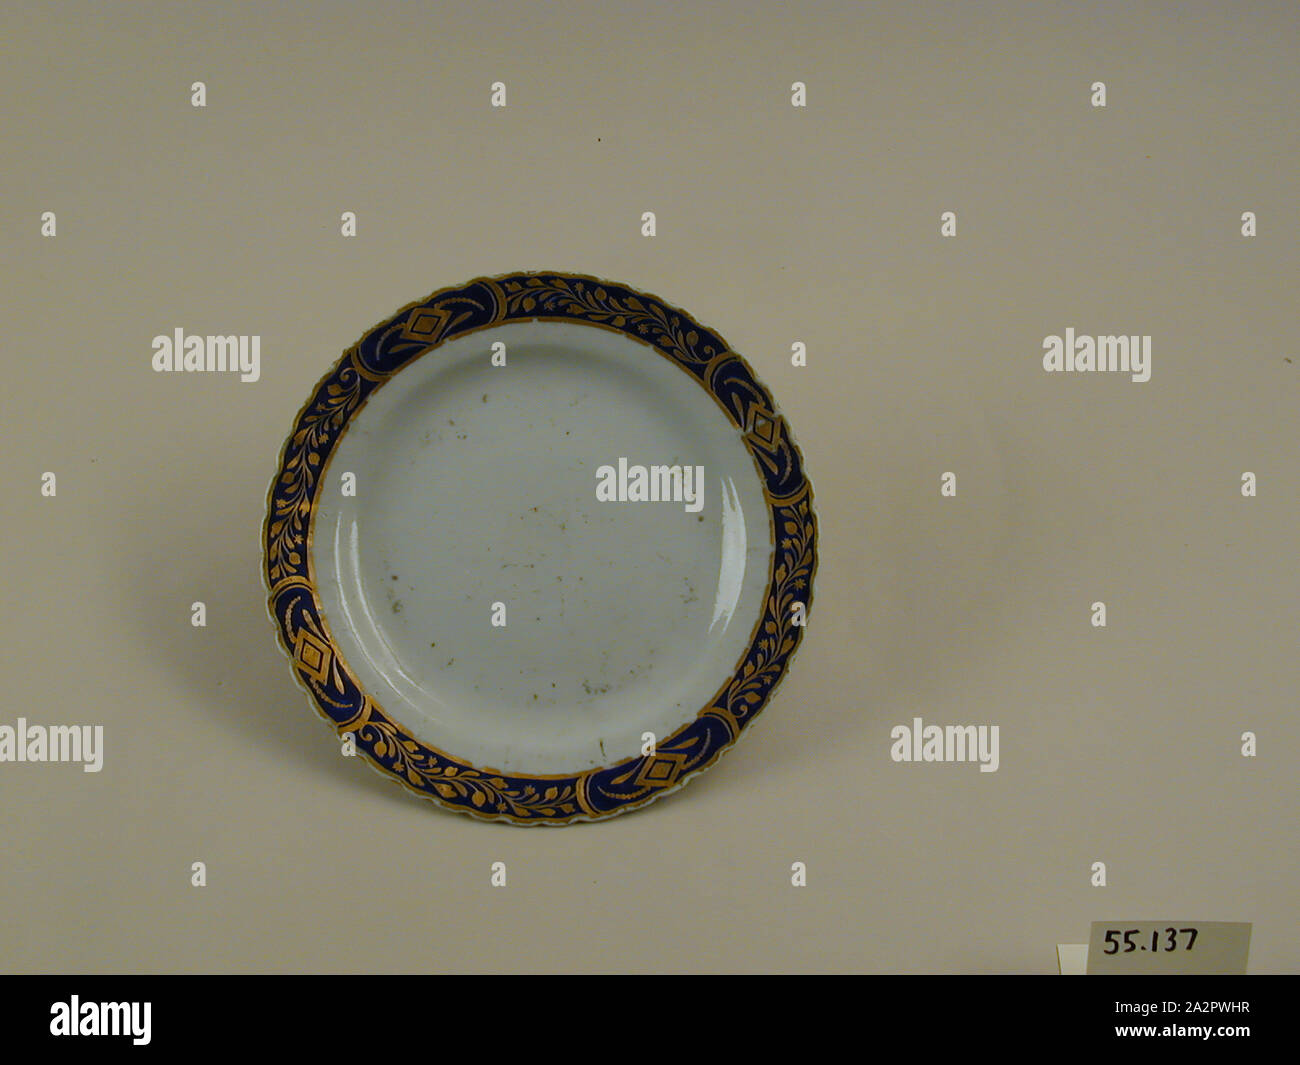 (Inconnu), chinois, 18e siècle Plaque émaillée, porcelaine pâte dure avec émail polychrome et dorure, Hauteur x diamètre : 7/8 x 7 1/2 in. (2,2 x 19,1 cm Banque D'Images